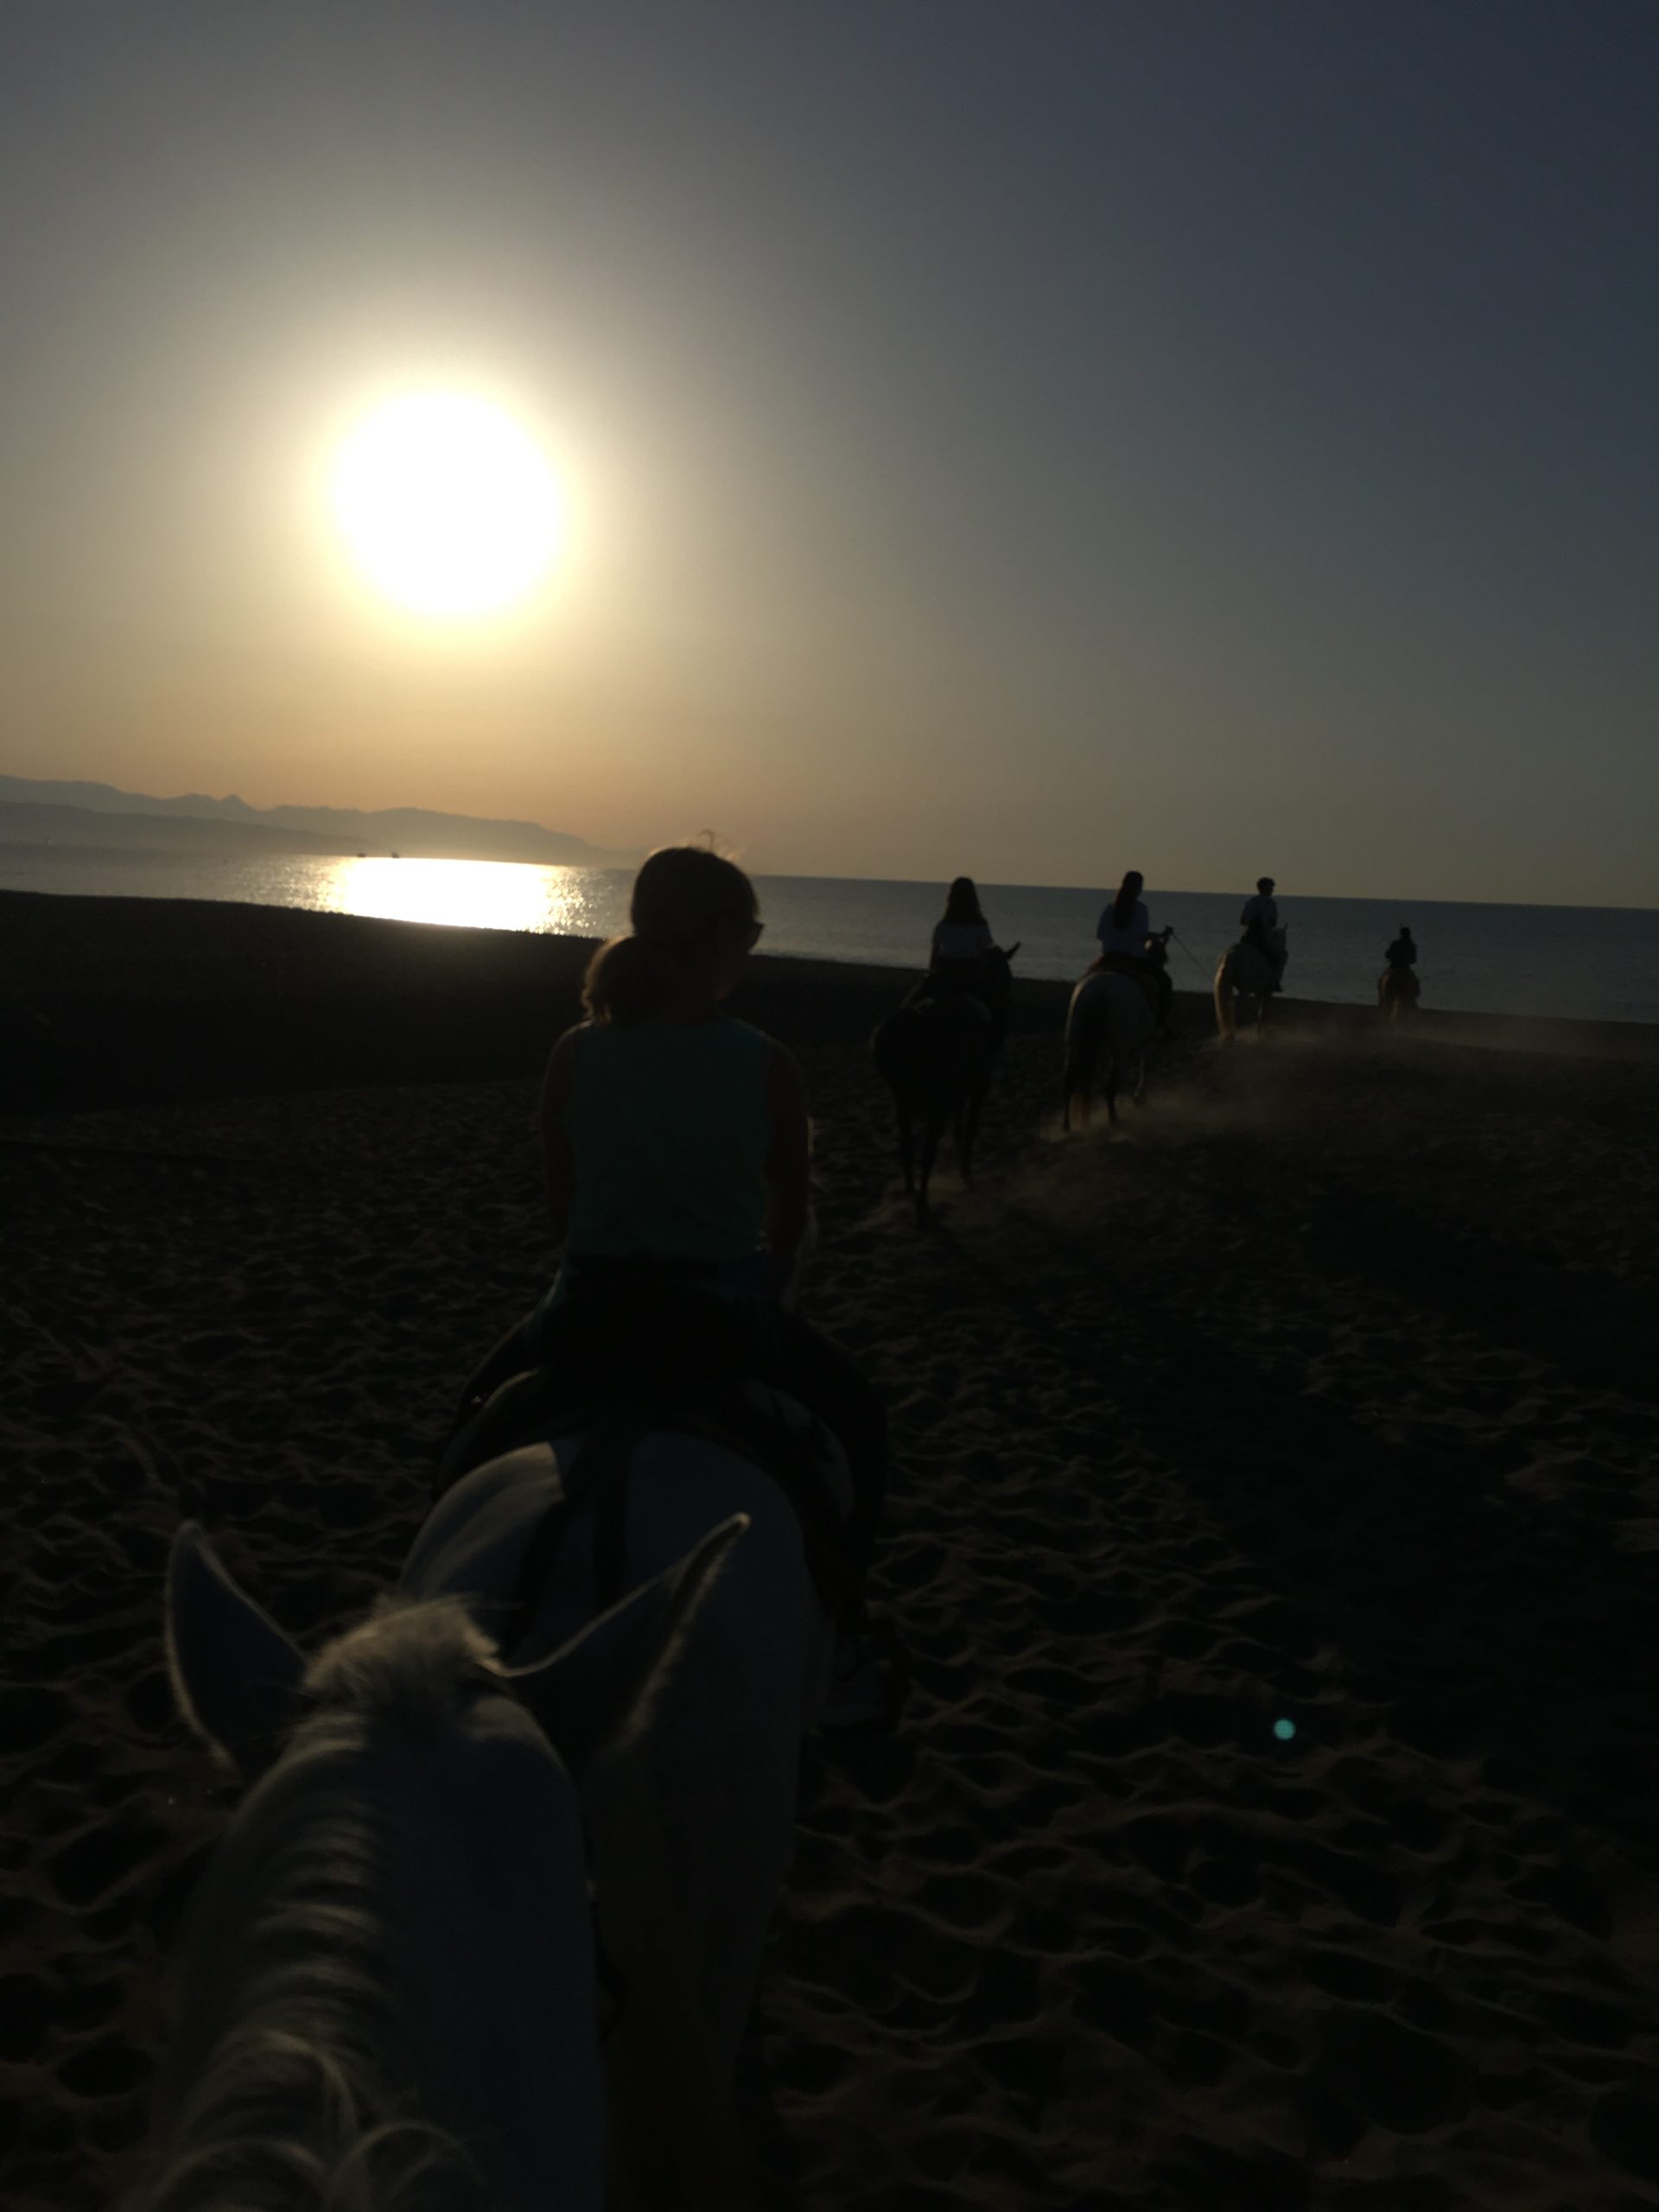 balade a cheval dans le sable plage torremolinos